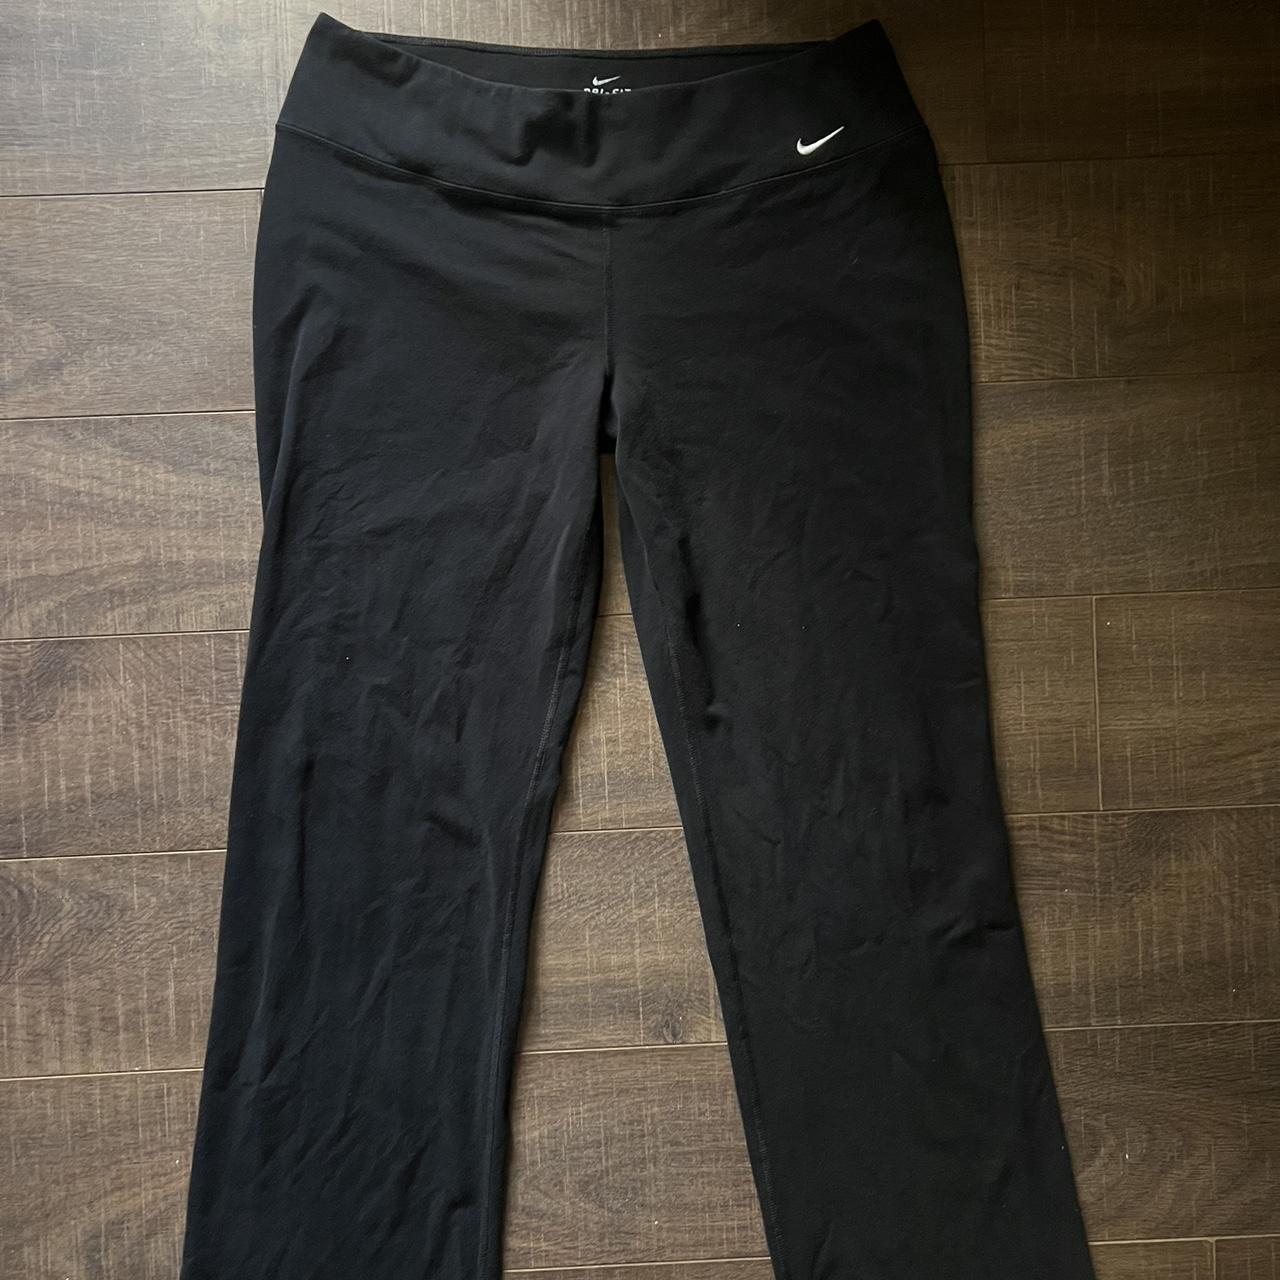 Nike flare leggings. Originally $62. - Depop